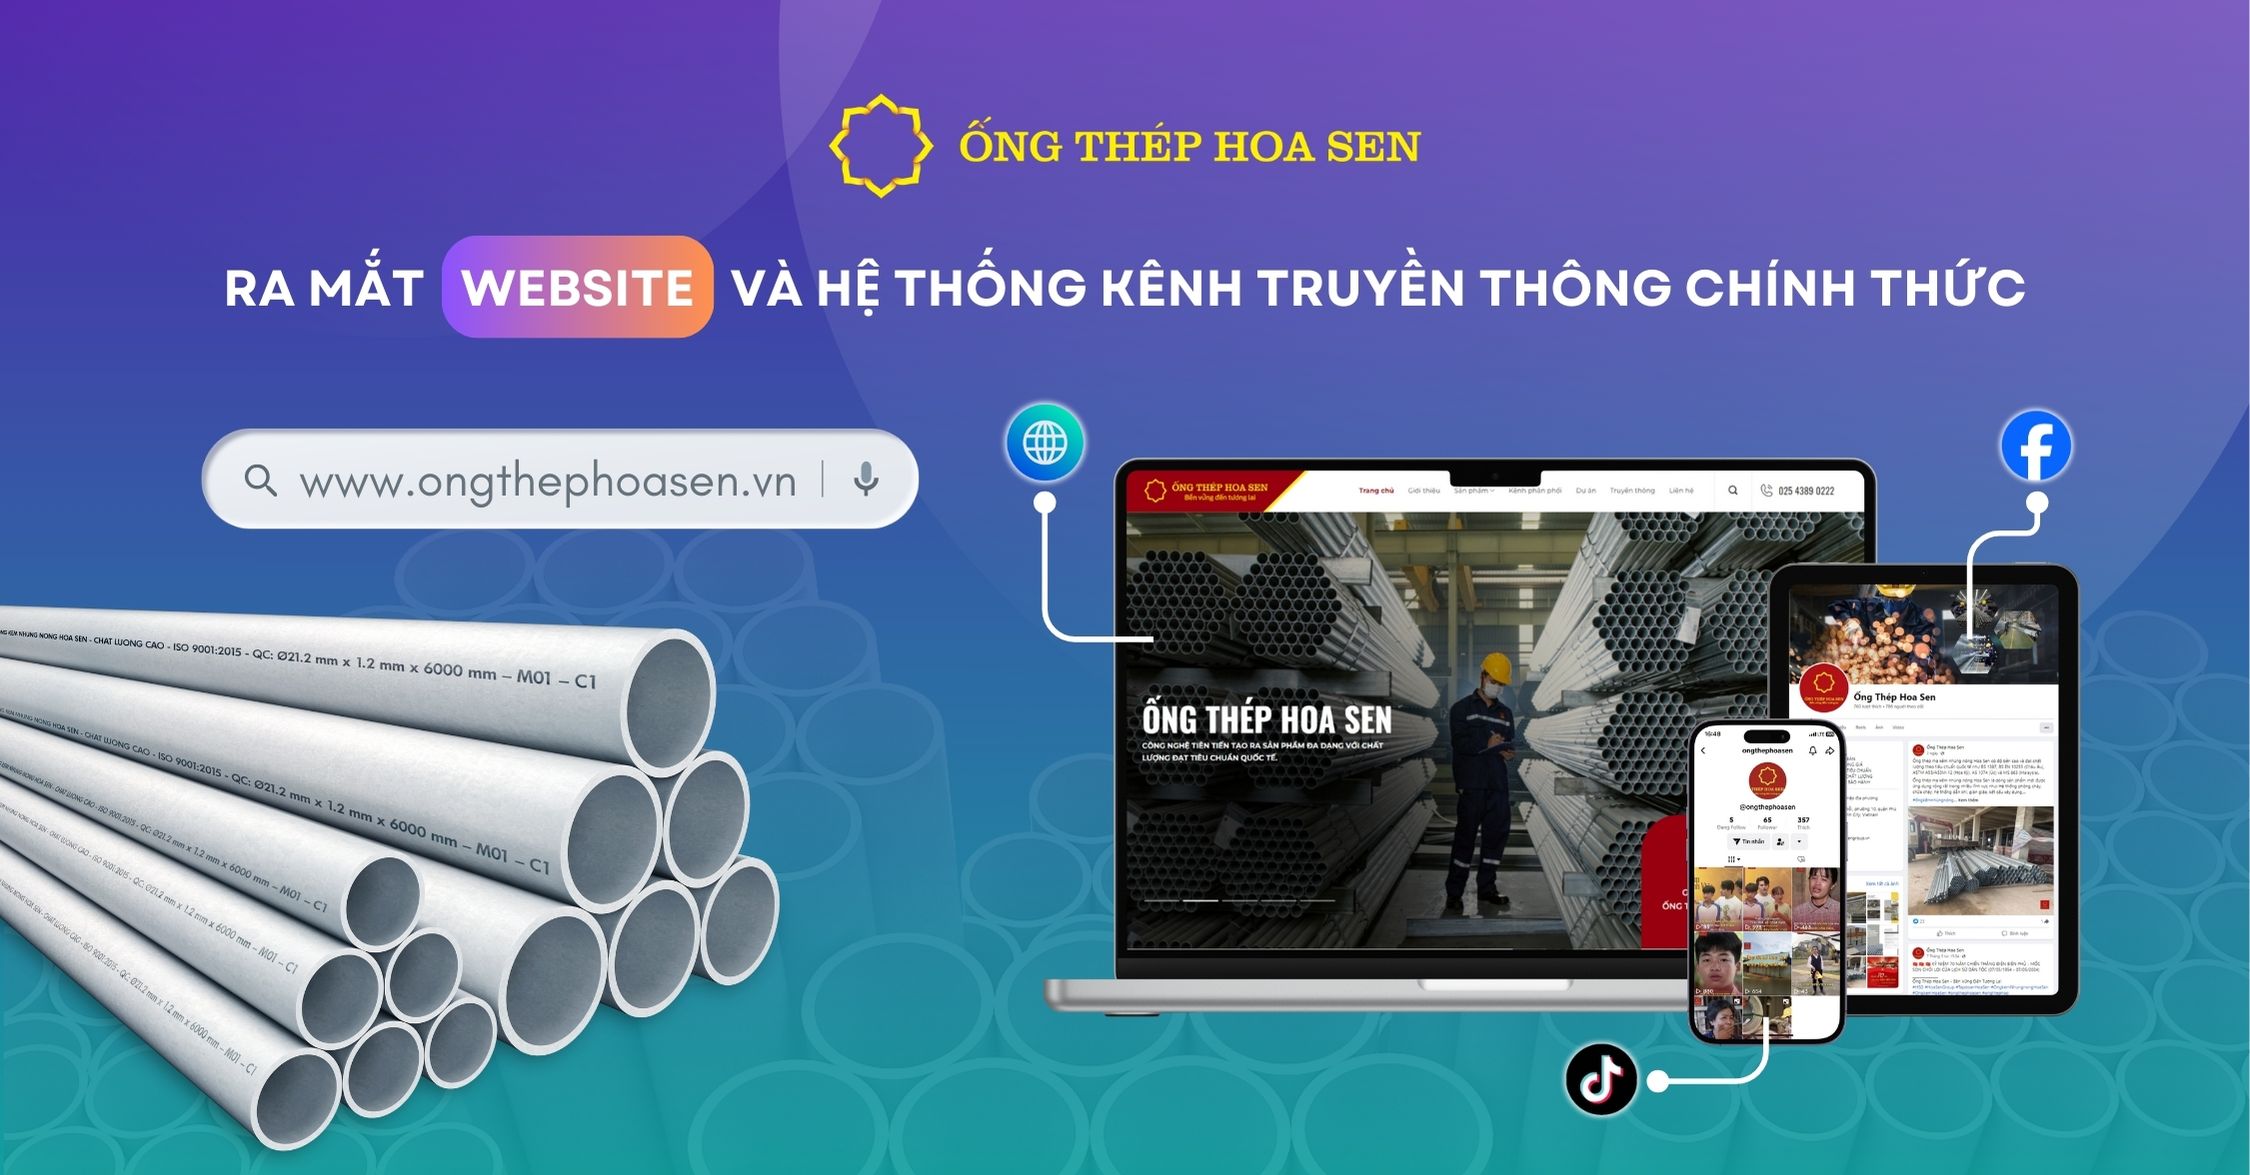 Ra mắt Website và hệ thống kênh truyền thông chính thức Ống Thép Hoa Sen